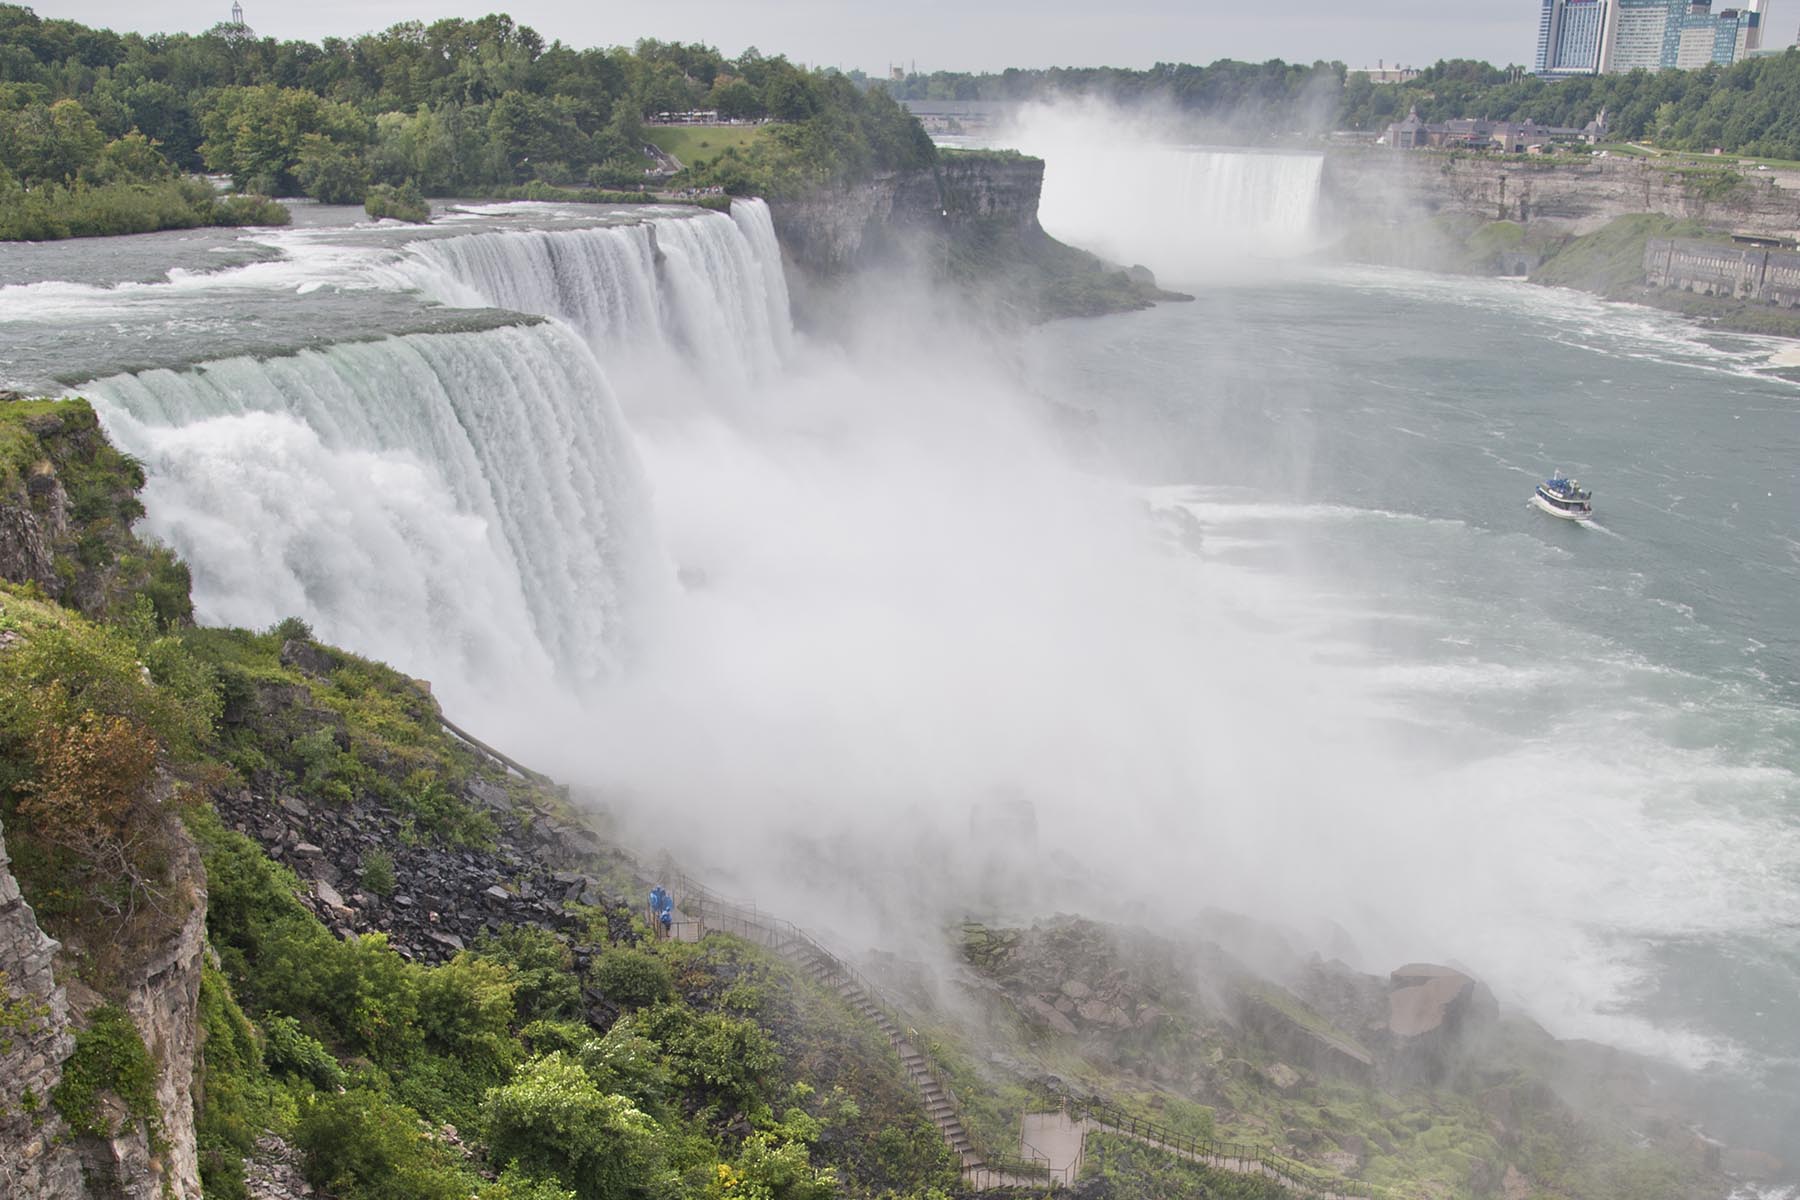 Is Niagara Falls in upstate New York?